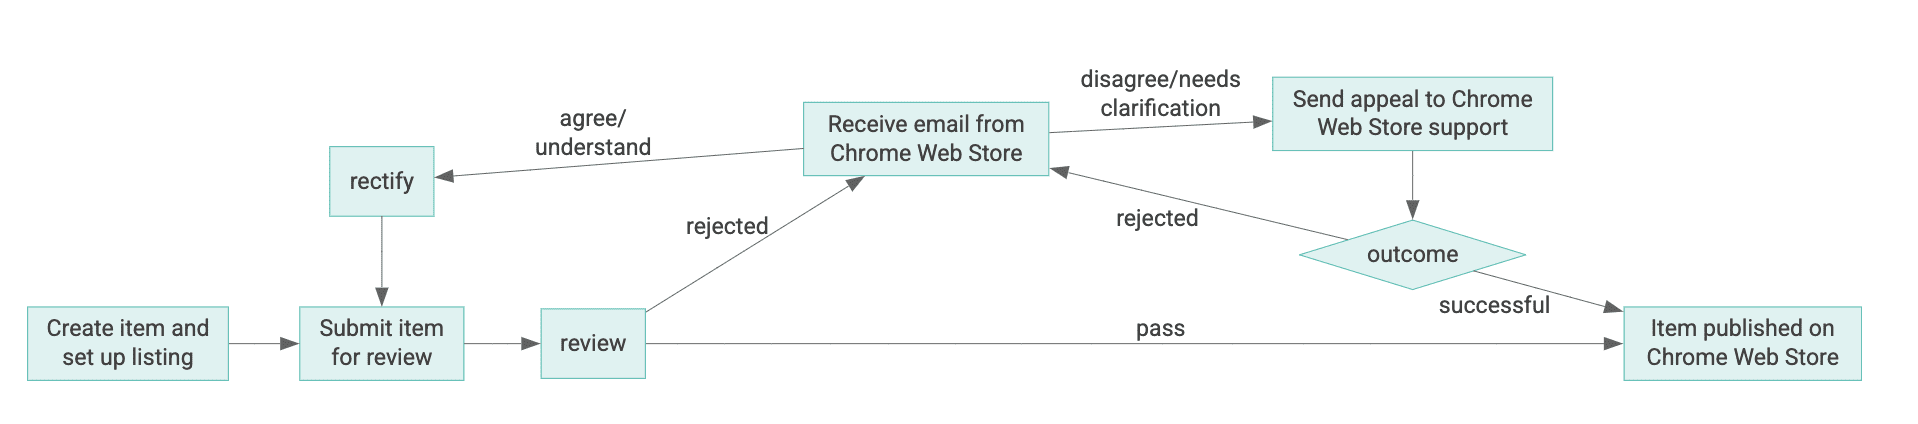 Chrome Web Store पर मौजूद किसी आइटम के लाइफ़साइकल का डायग्राम